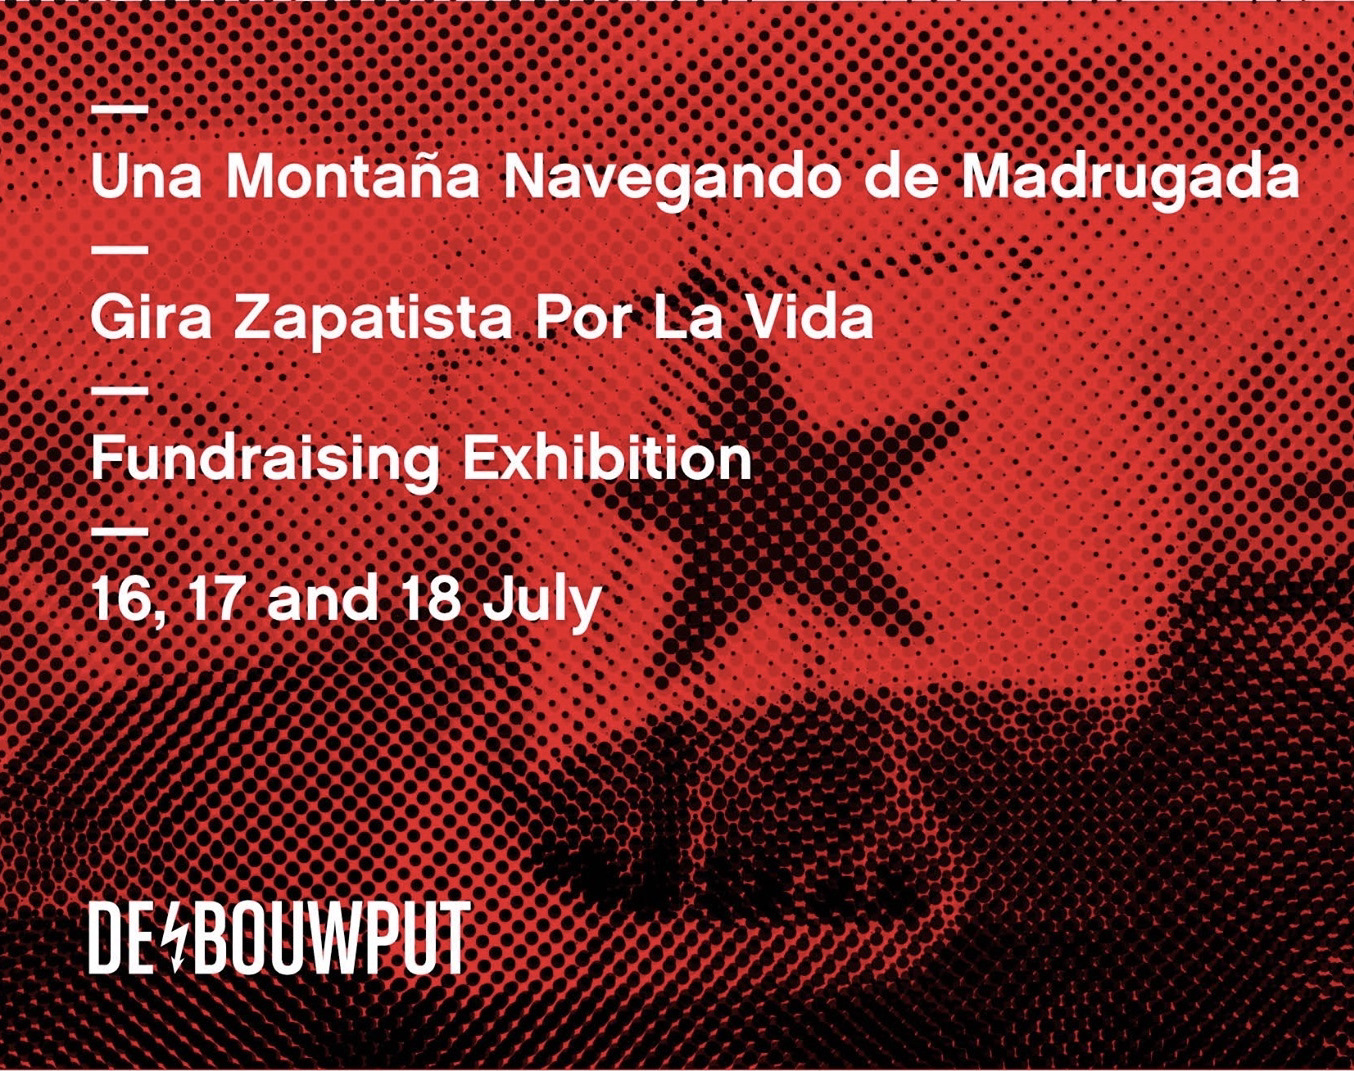 Exhibition for La Gira Zapatista Por La Vida